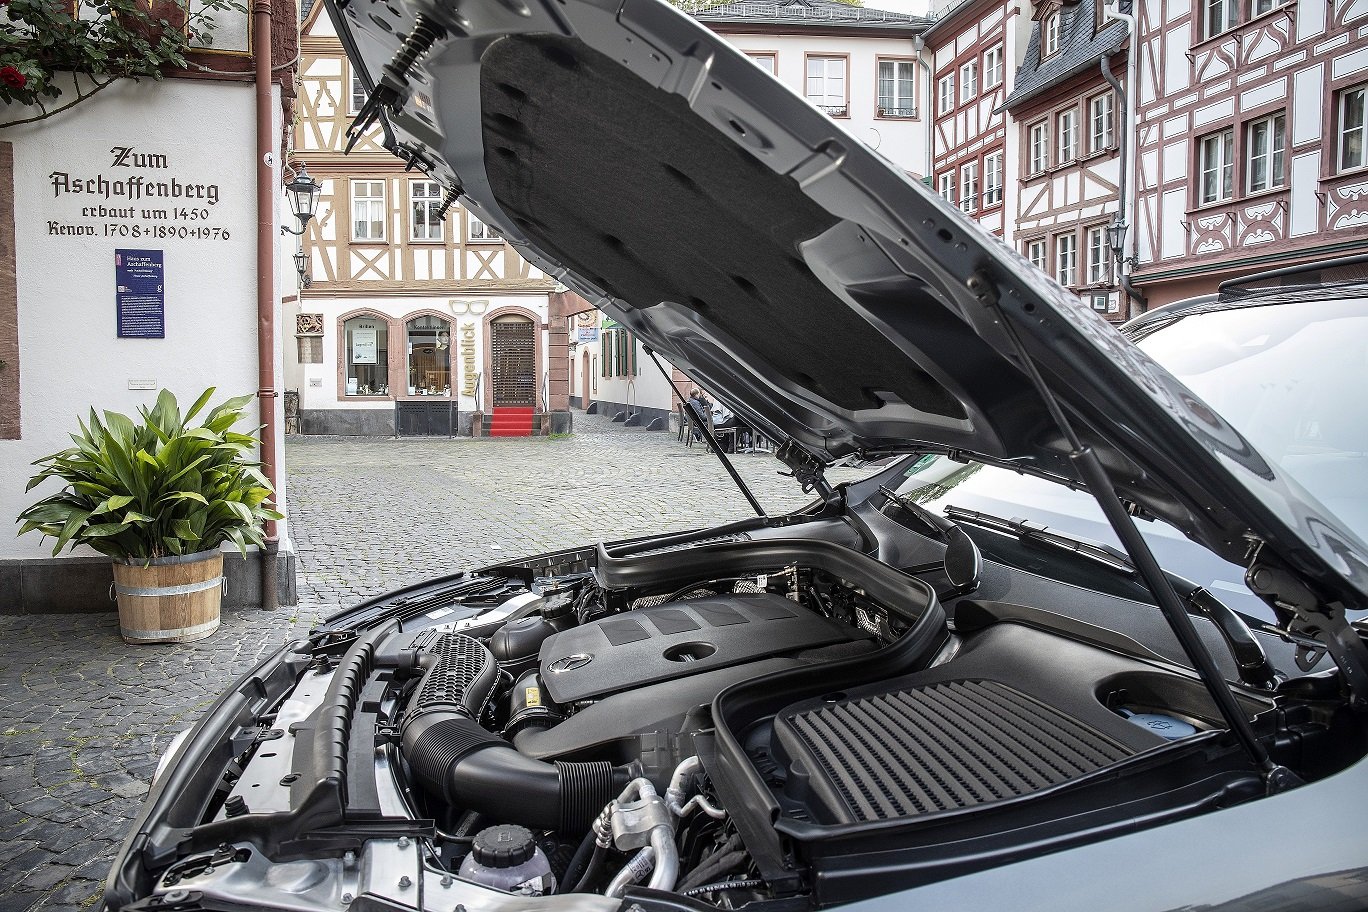 Mercedes-Benz GLC 300 4Matic nâng cấp chuẩn bị mở bán, giá hơn 2,5 tỷ đồng 4a